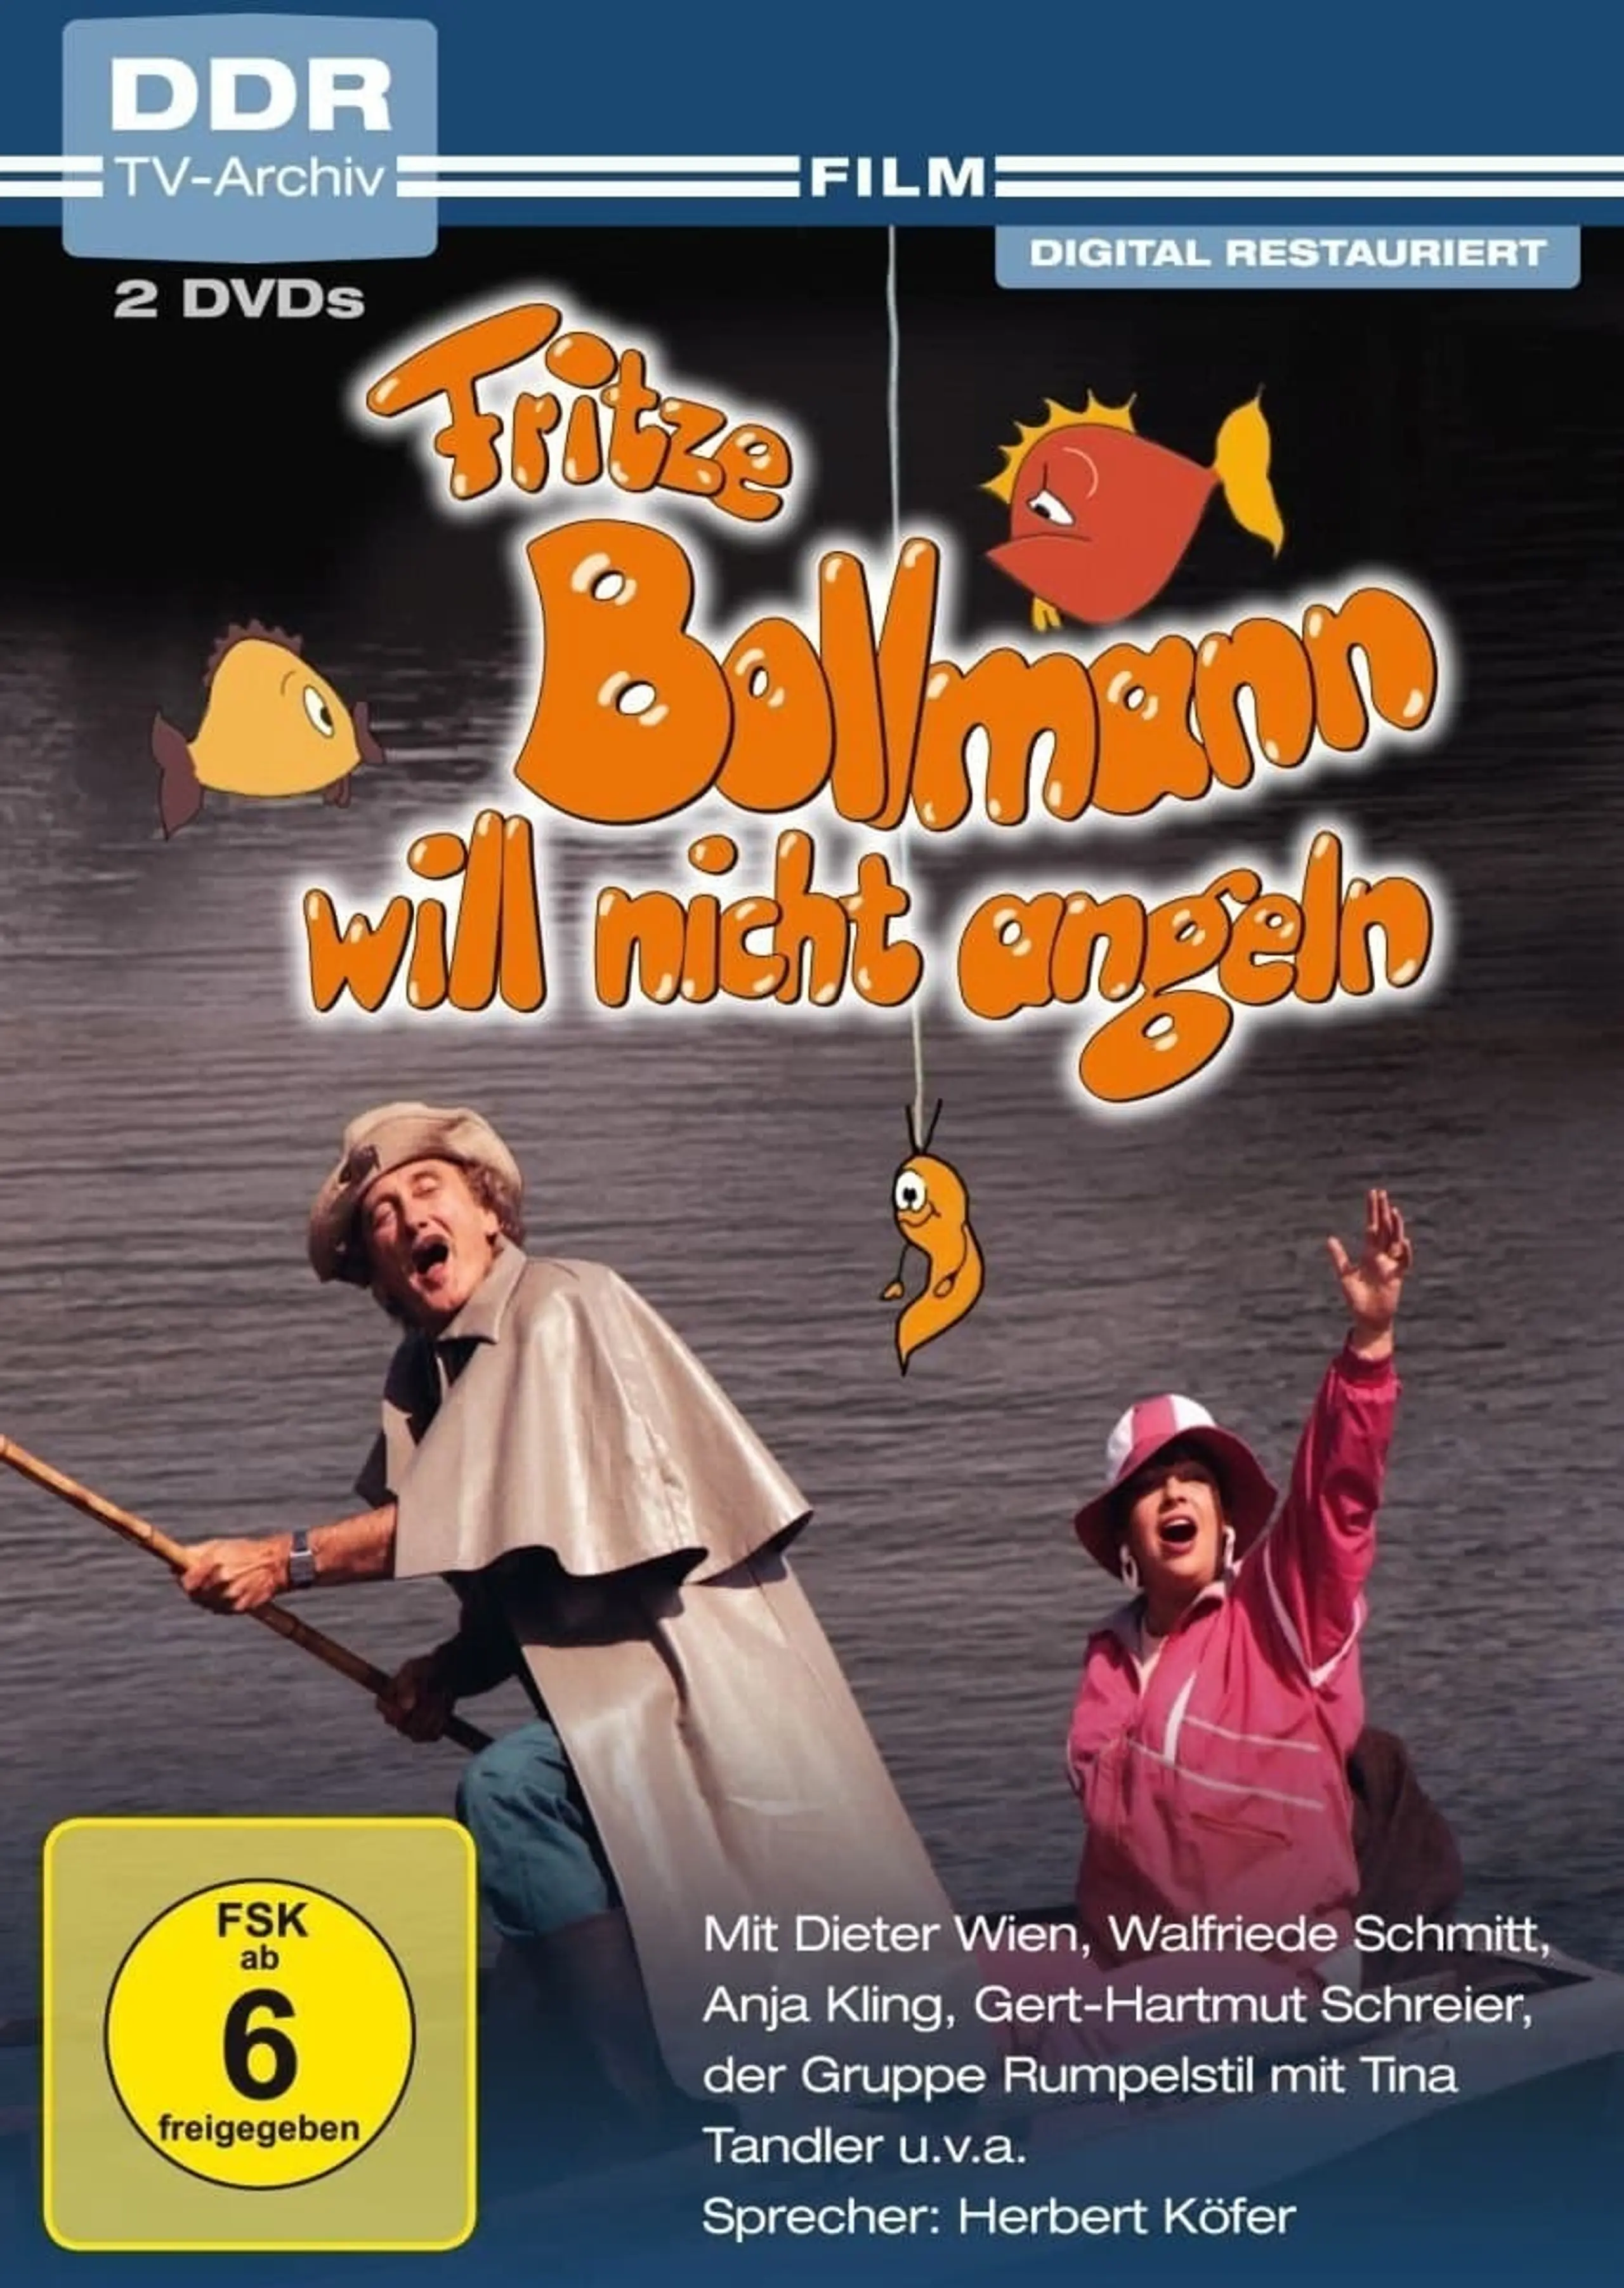 Fritze Bollmann will nicht angeln